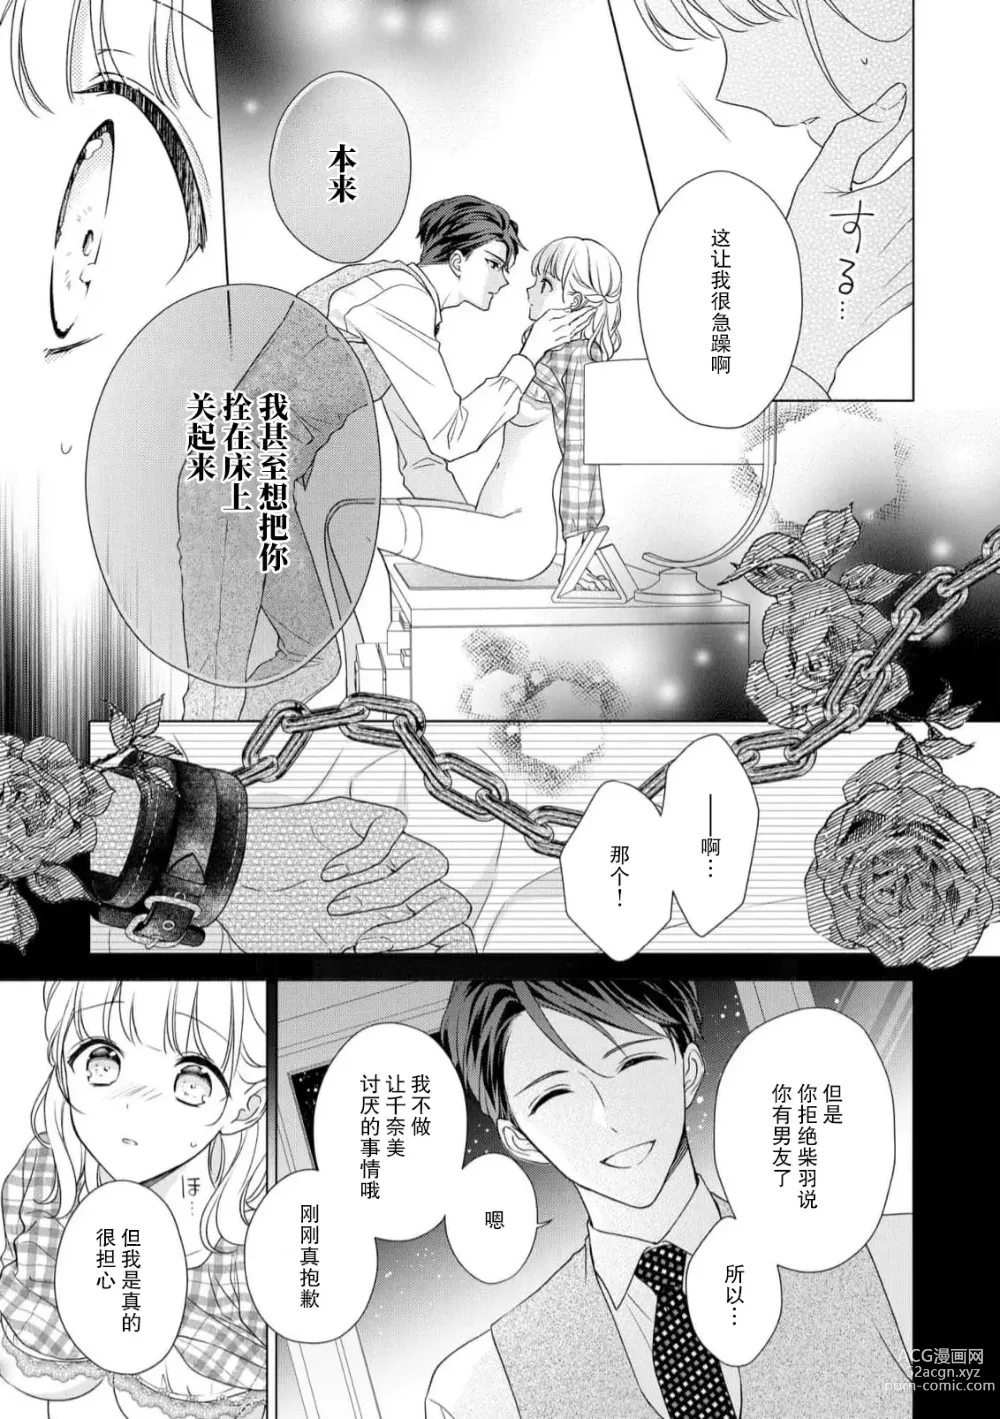 Page 16 of manga 宠爱社长贪恋我 ~用甘甜的毒将深处也融化~